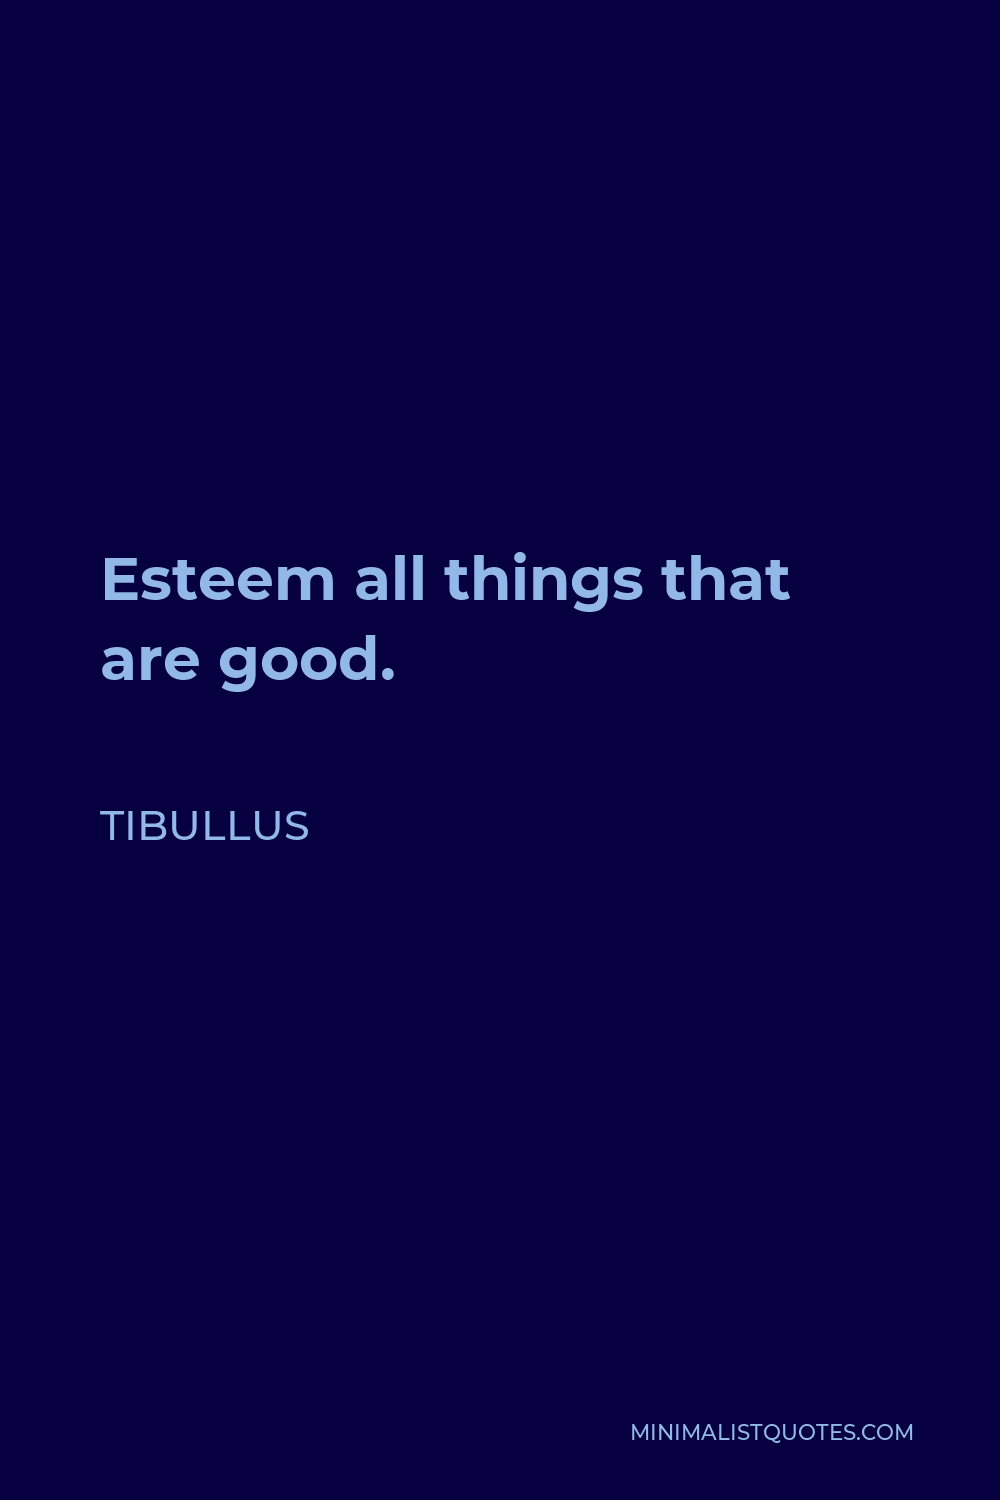 Tibullus Quote - Esteem all things that are good.